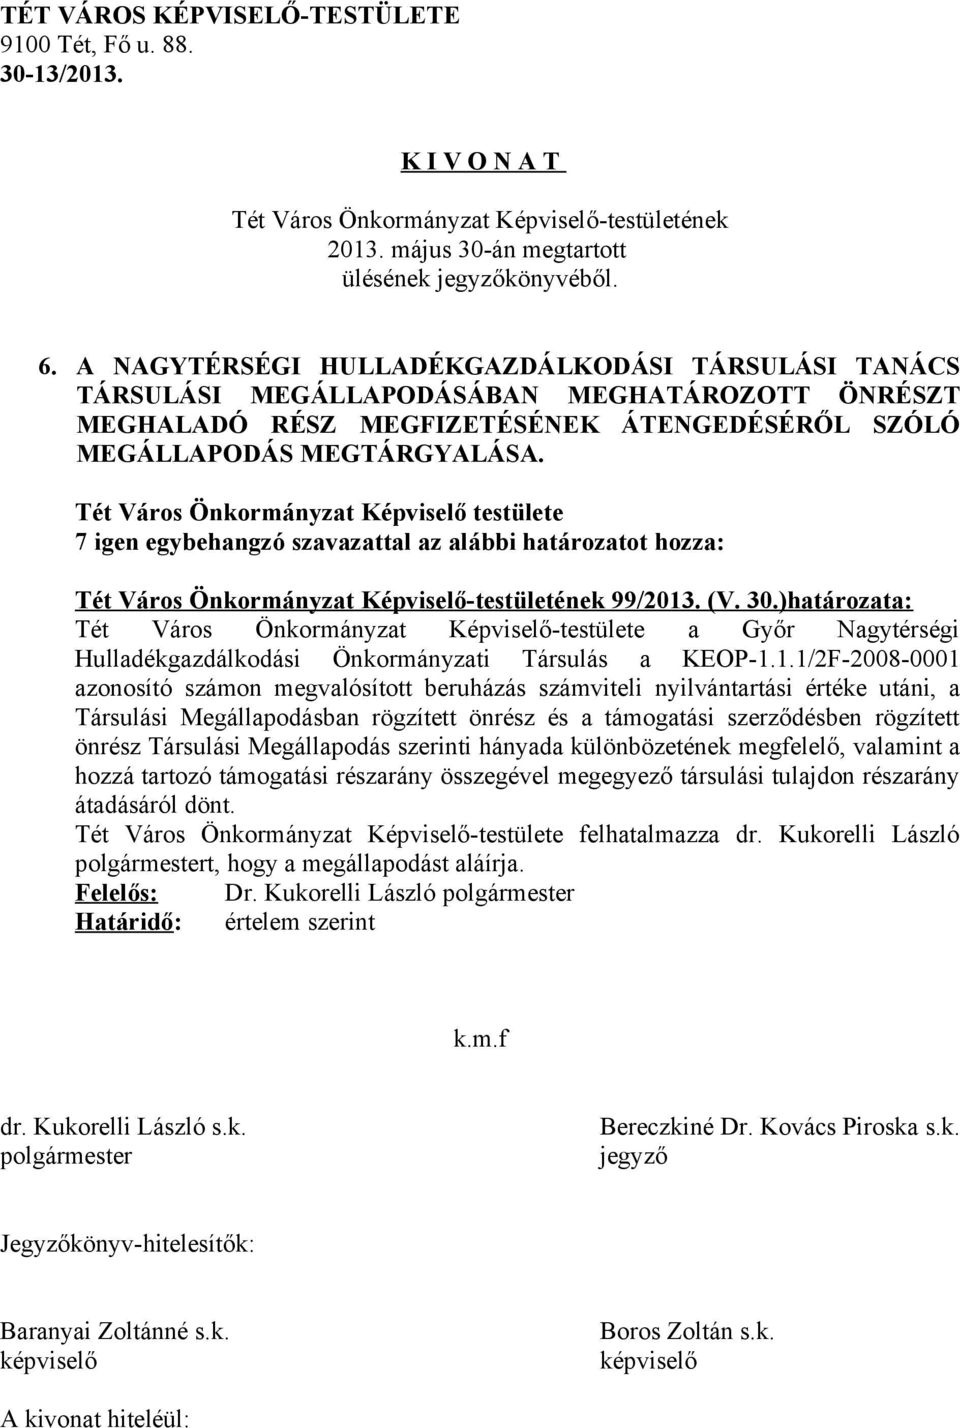 )határozata: Tét Város Önkormányzat Képviselő-testülete a Győr Nagytérségi Hulladékgazdálkodási Önkormányzati Társulás a KEOP-1.